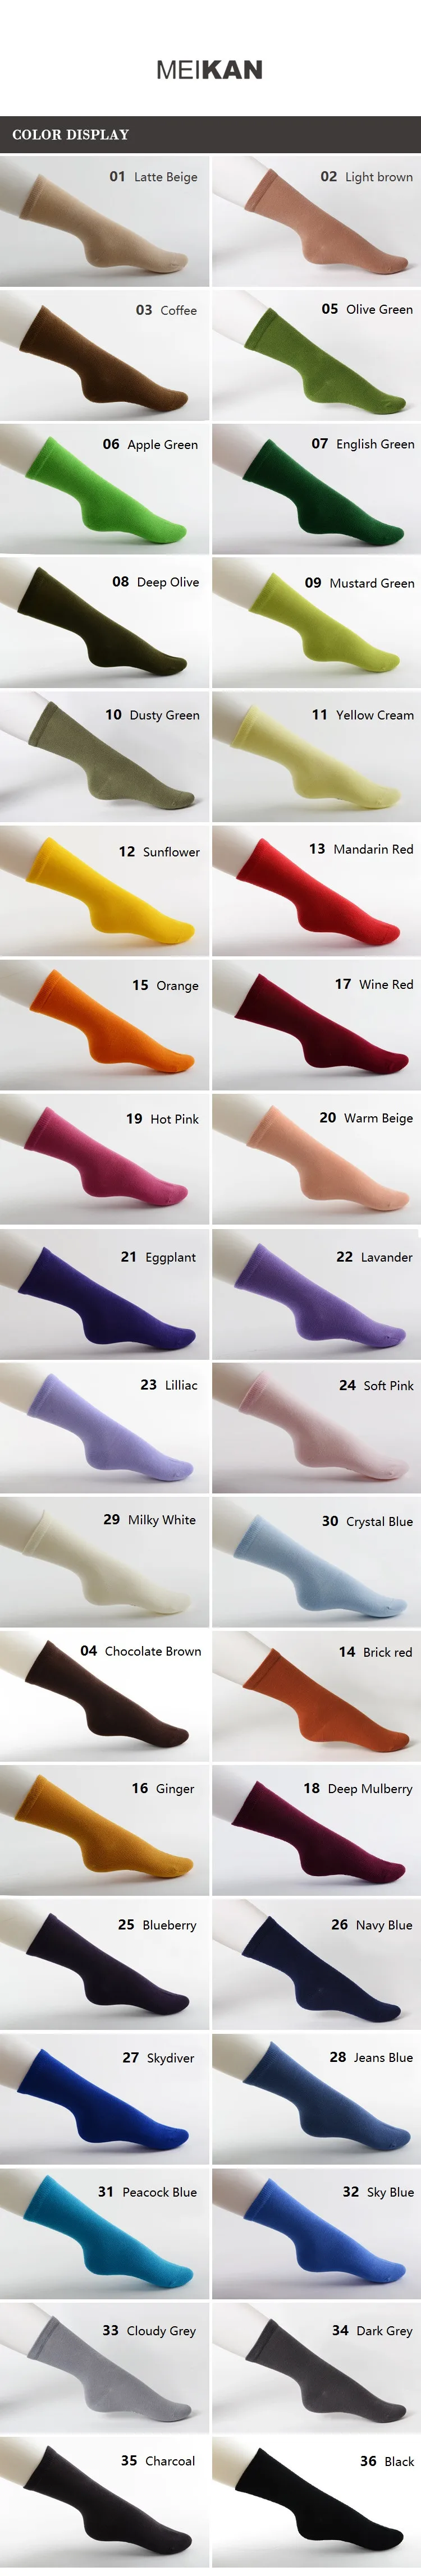 MK1226part1 MEIKANG бренд мужской красочные чесаный хлопковые носки до середины икры Повседневное носки для Для мужчин/Для женщин/Детские